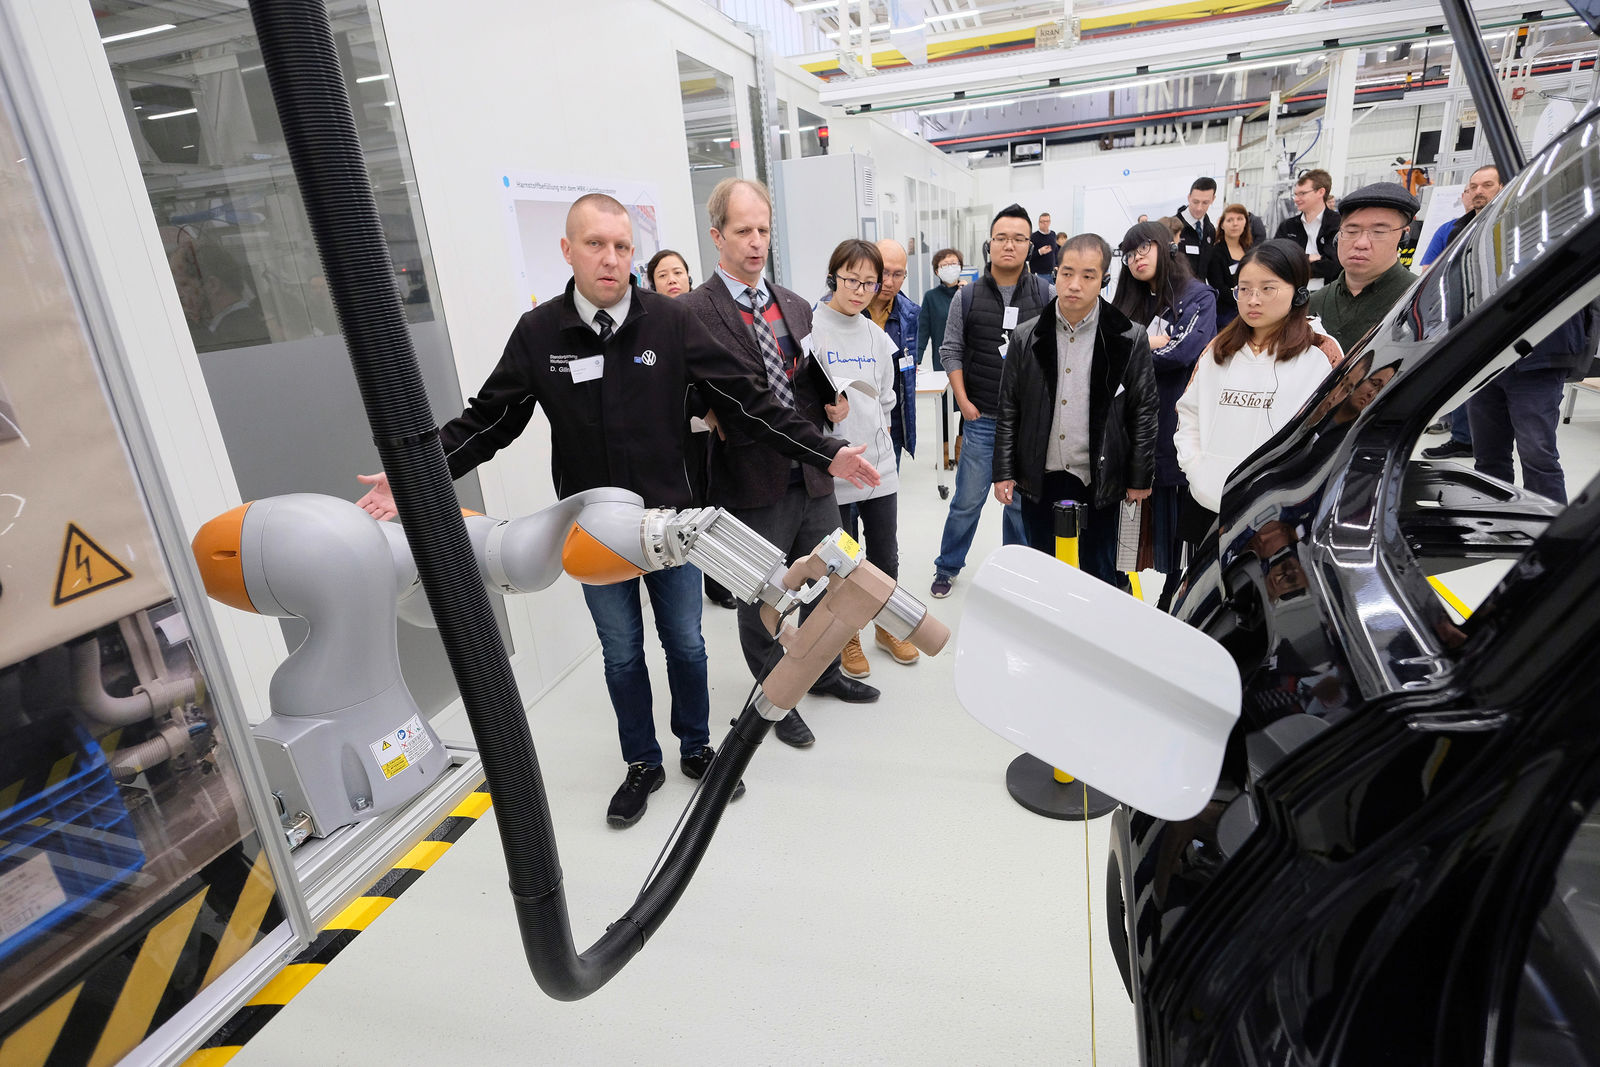 Medientag Digitalisierung in der Produktion bei Volkswagen